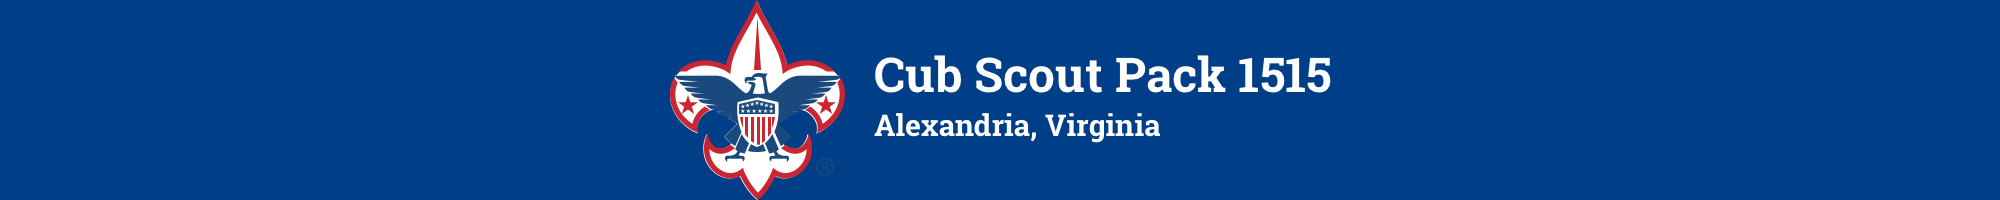 Cub Scout Pack 1515, Alexandria, VA